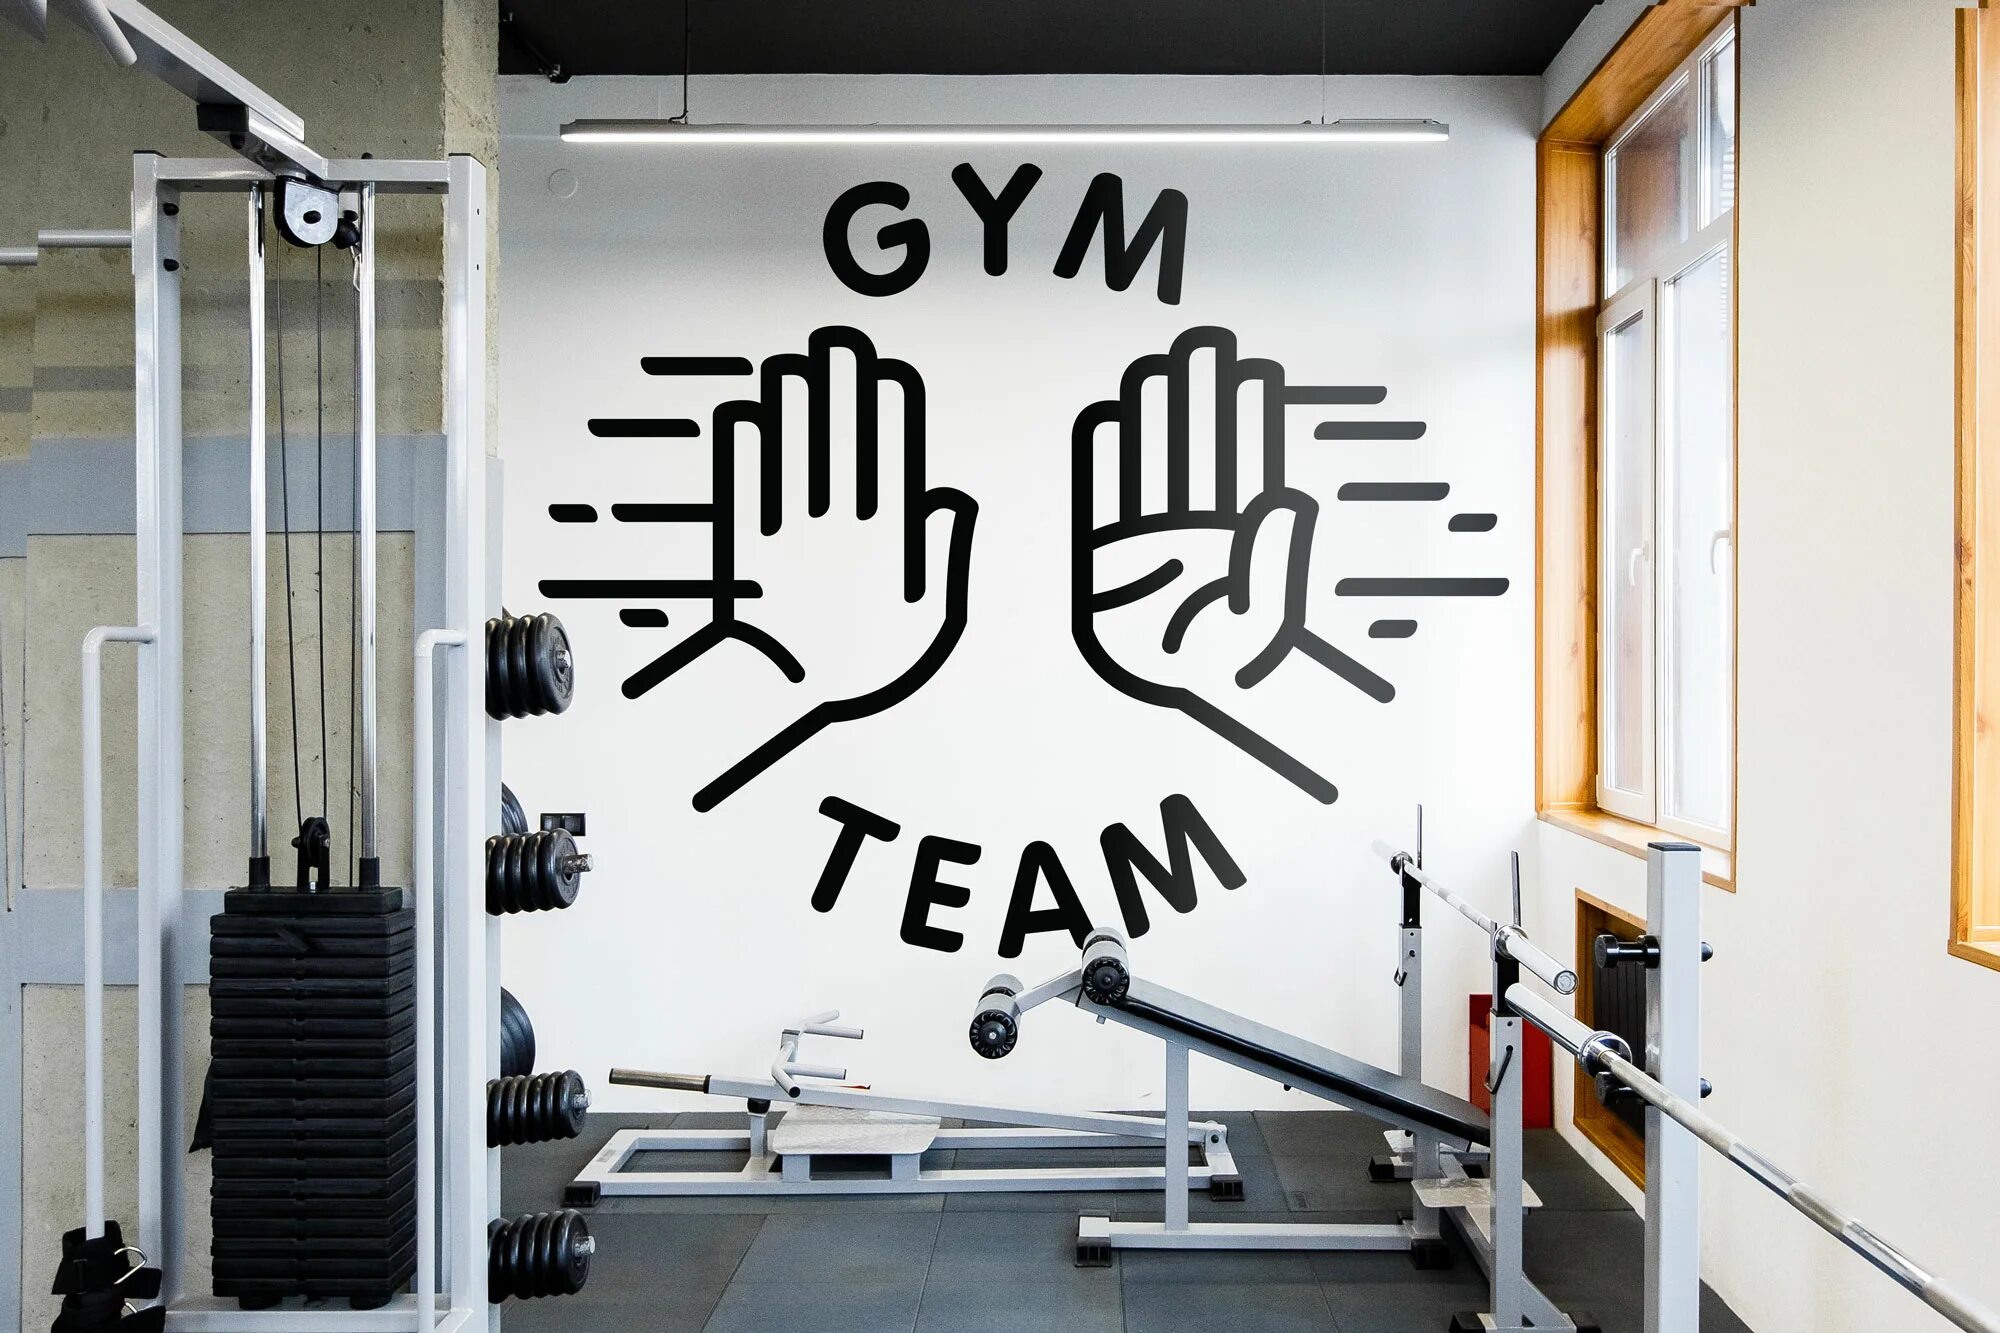 Обои в стиле gym. Фирменный стиль тренажерного зала. Gym надпись. Роспись стен в спортзале. Тренажерный зал логотип.